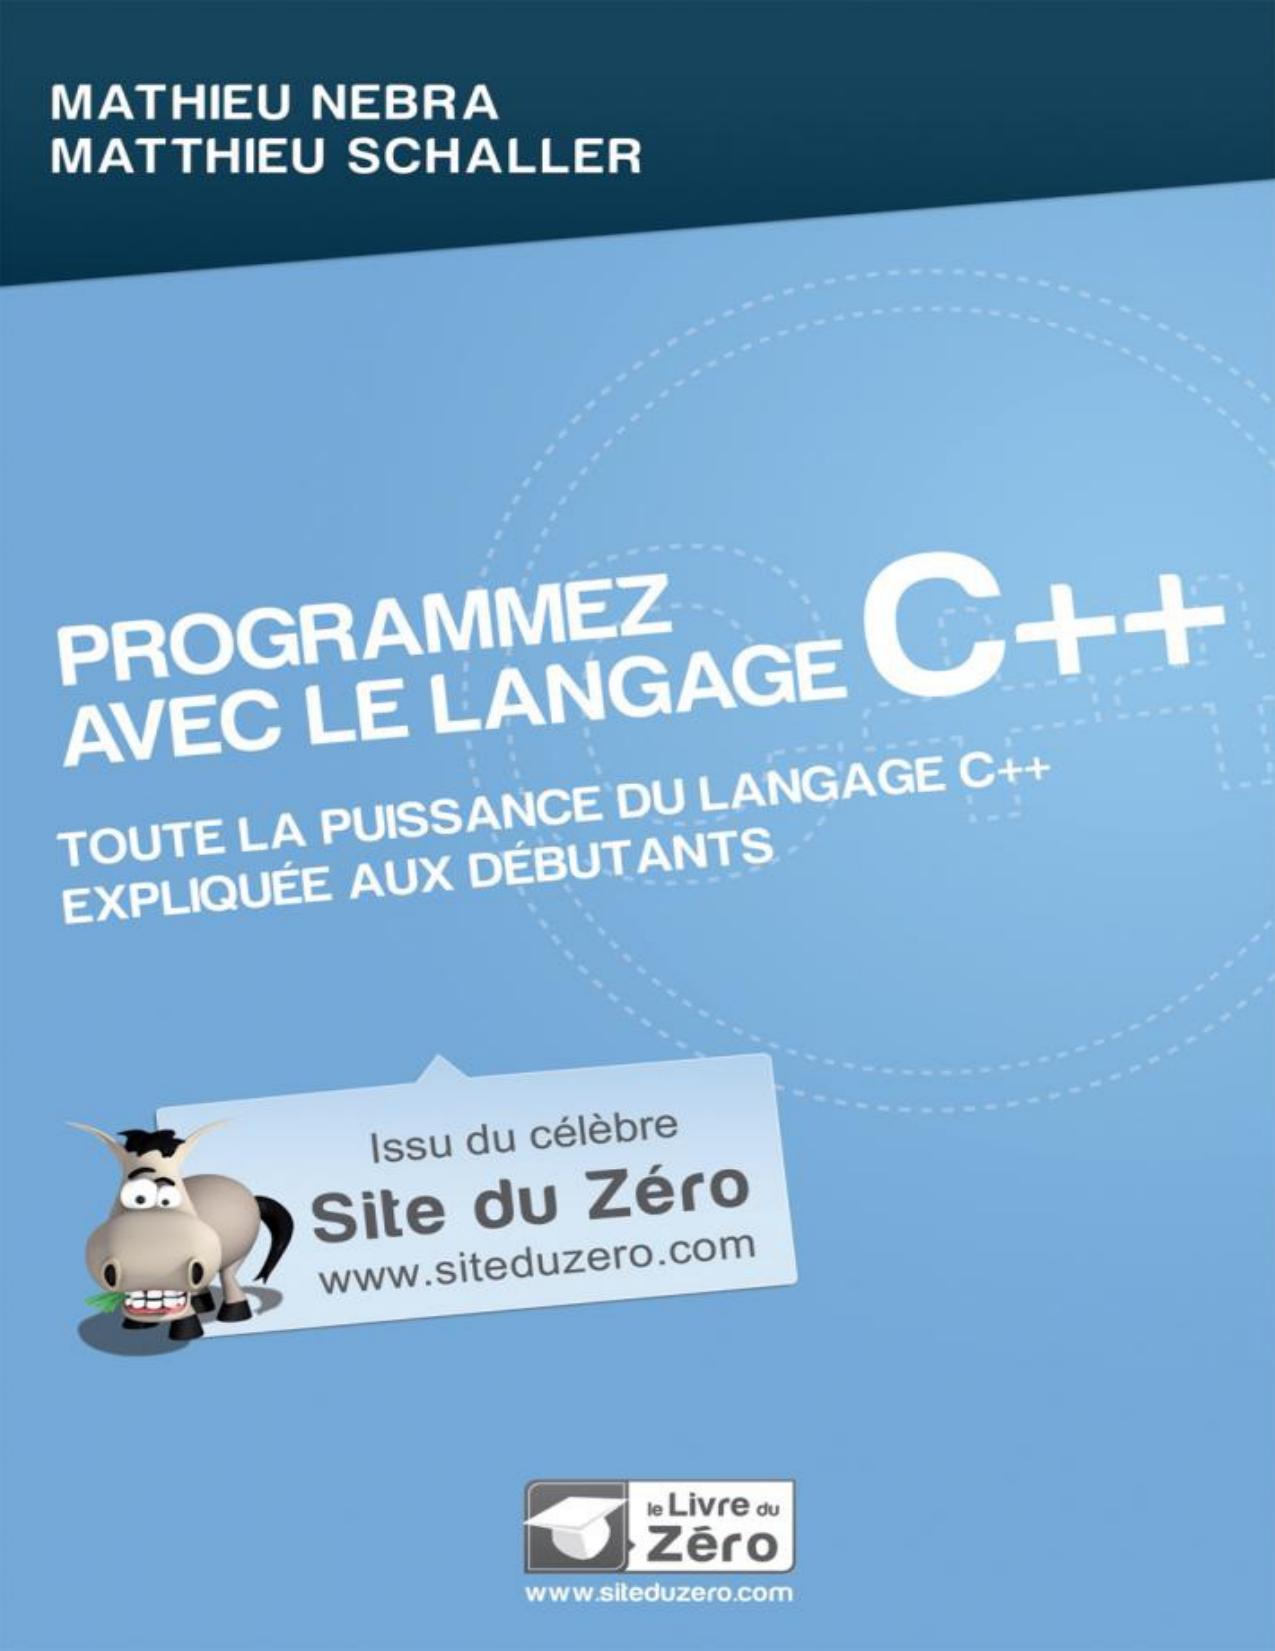 Programmez avec le langage C++ (Livre du Zéro) (French Edition)